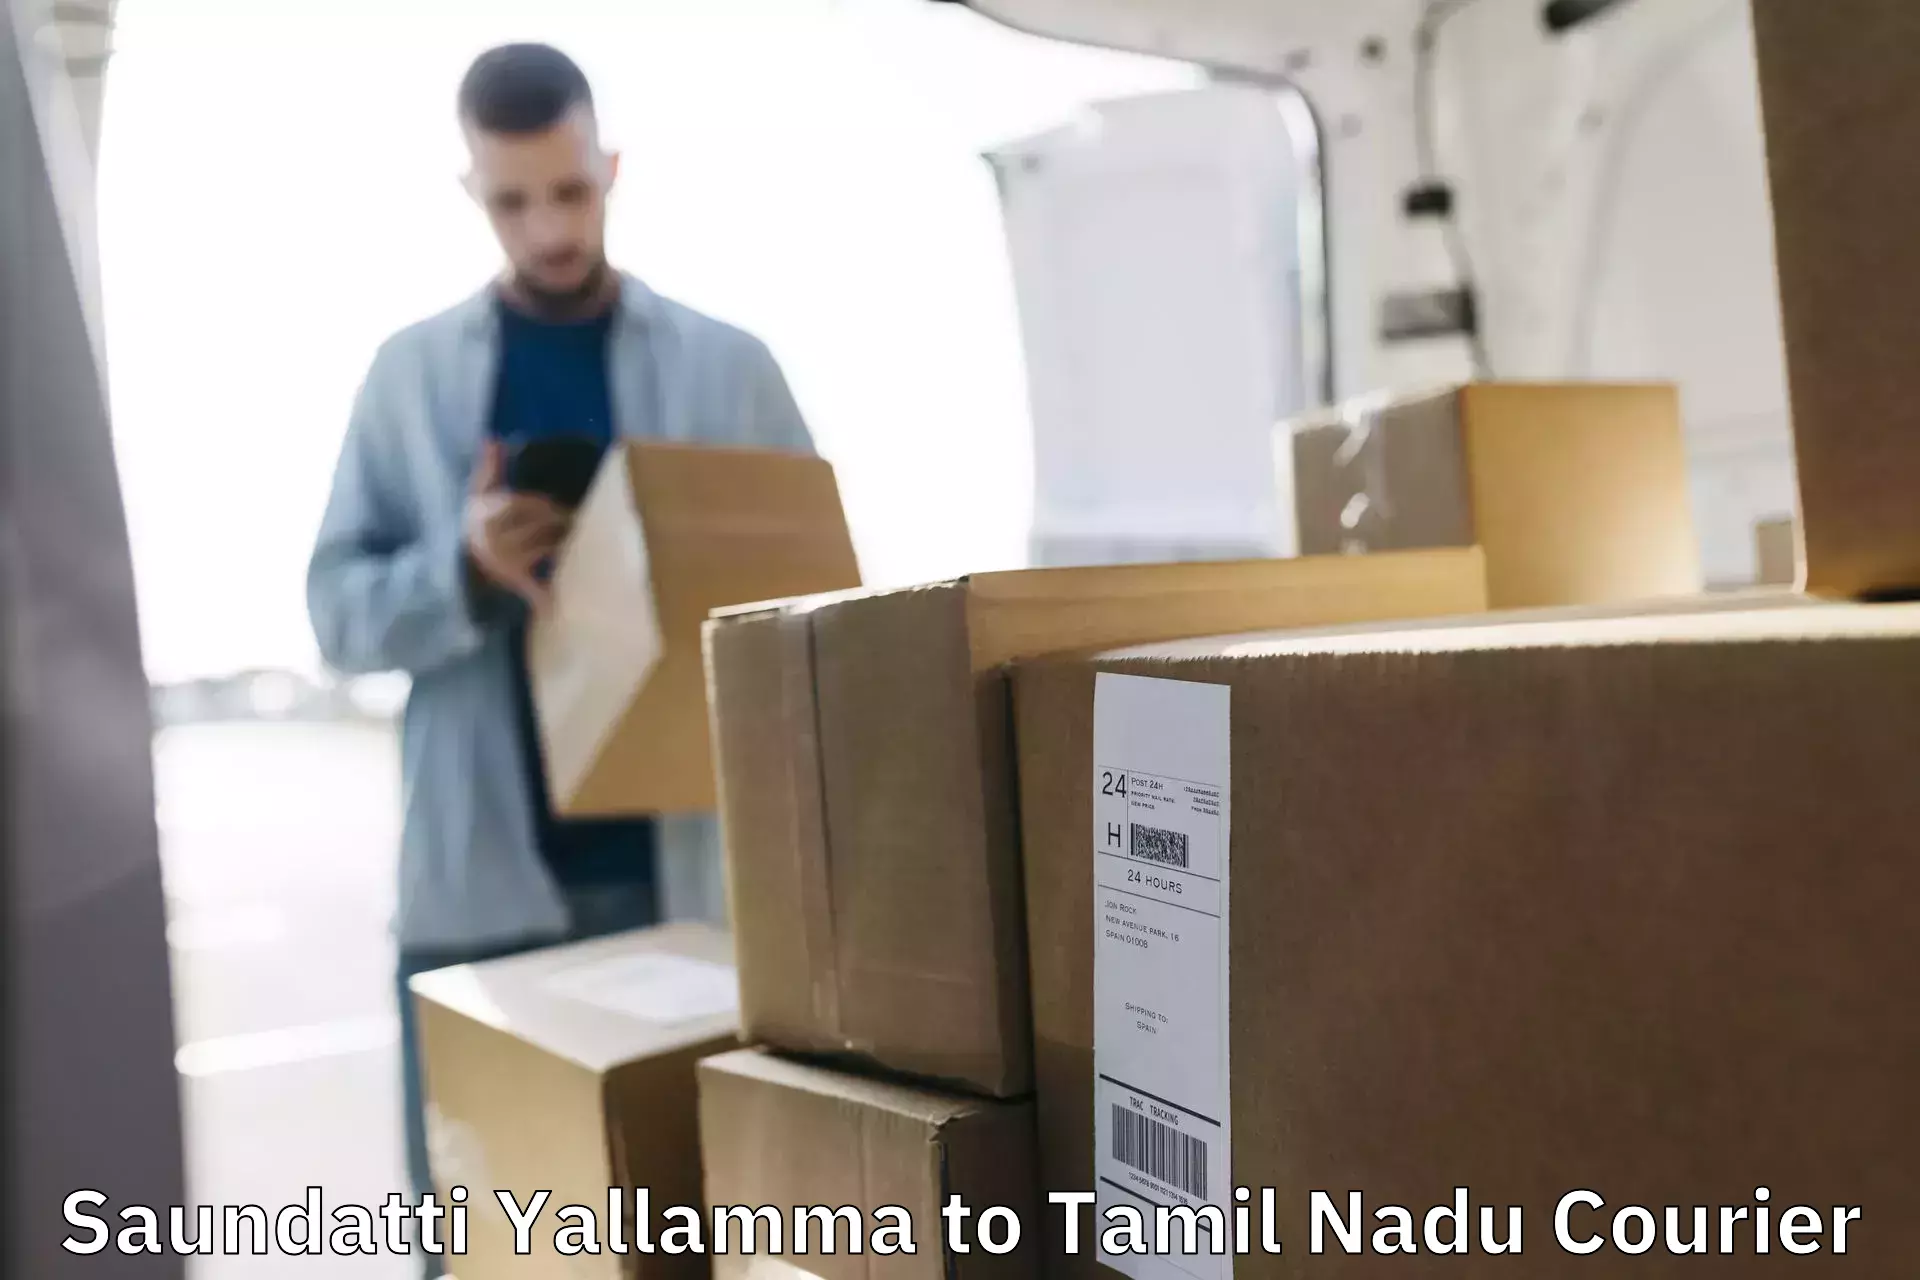 End-to-end delivery Saundatti Yallamma to Puliampatti